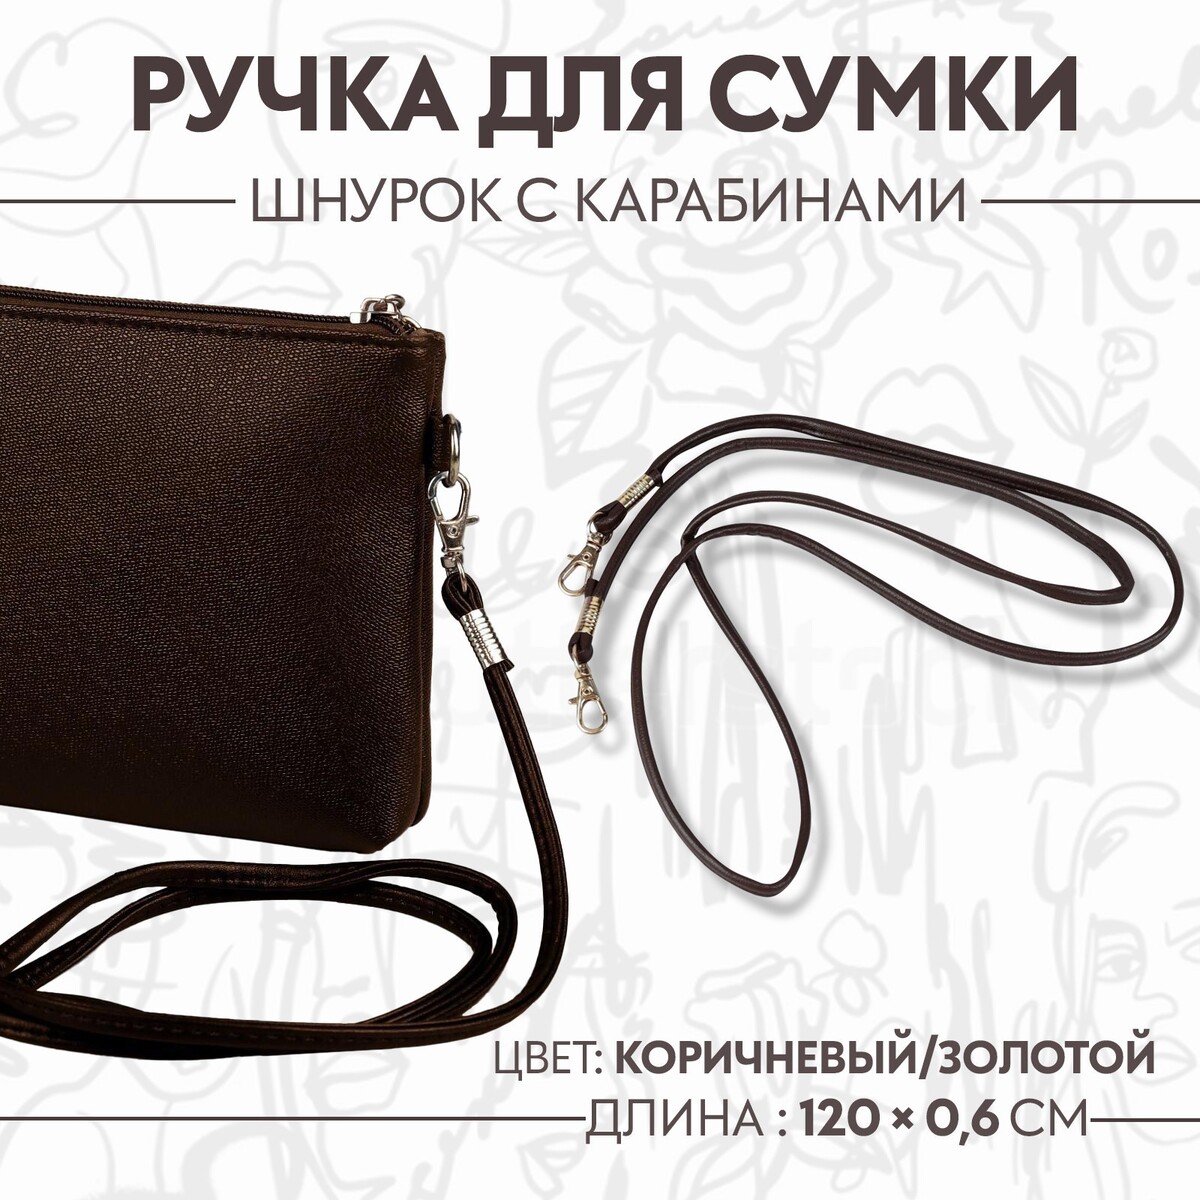 Ручка-шнурок для сумки, с карабинами, 120 × 0,6 см, цвет коричневый ручка для сумки с цепочками и карабинами 120 × 1 8 см